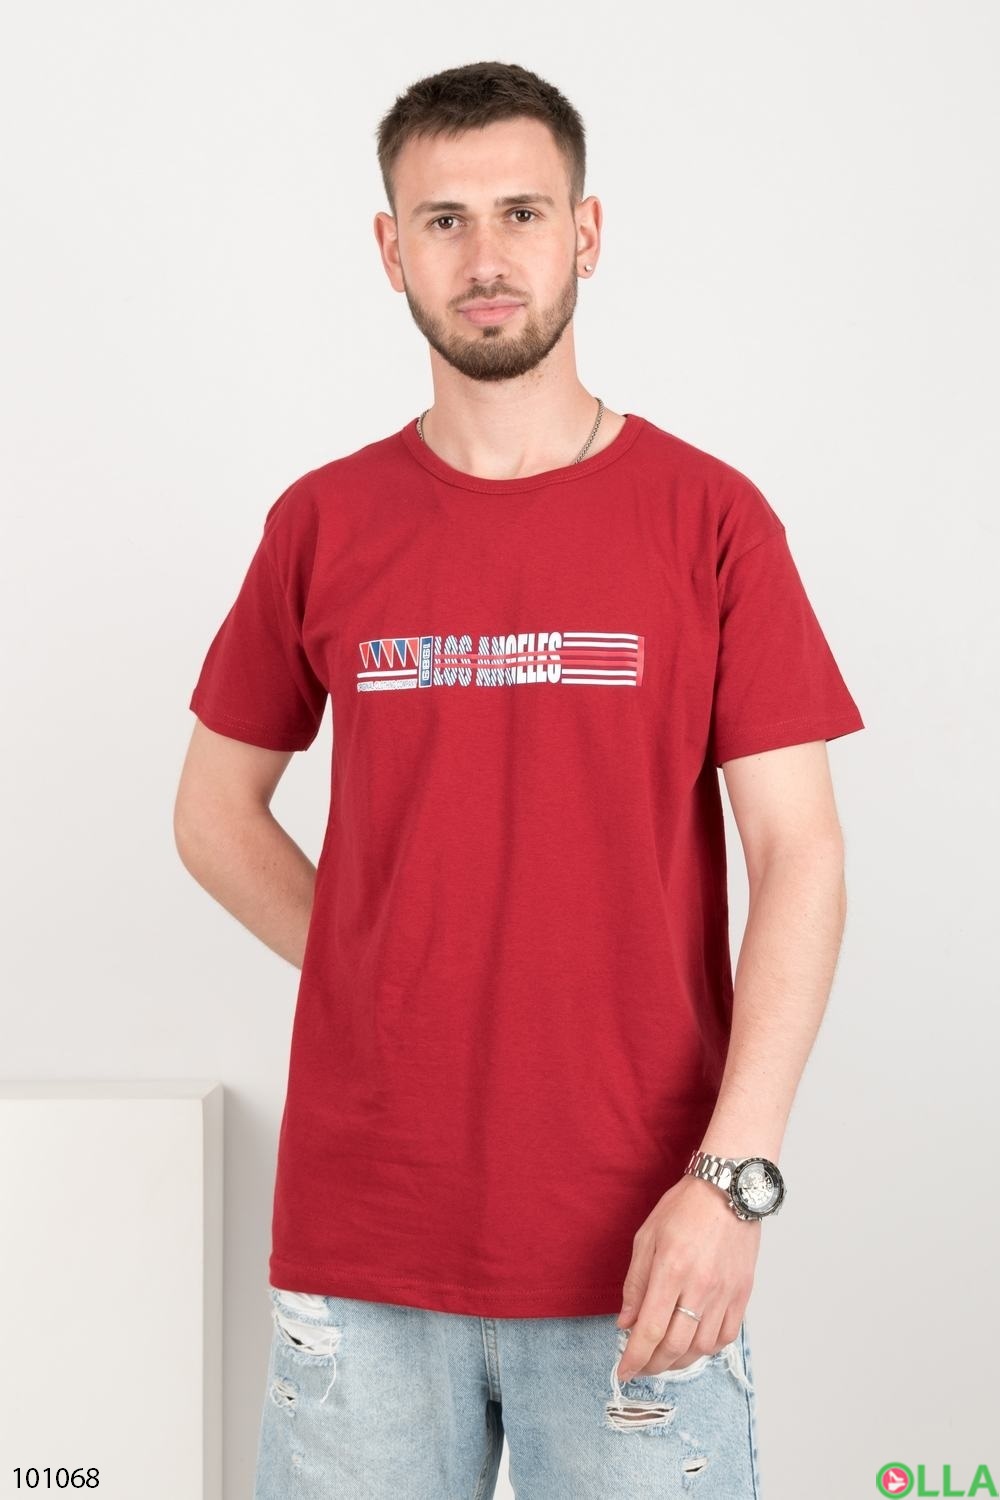 Чоловіча червона футболка з написом